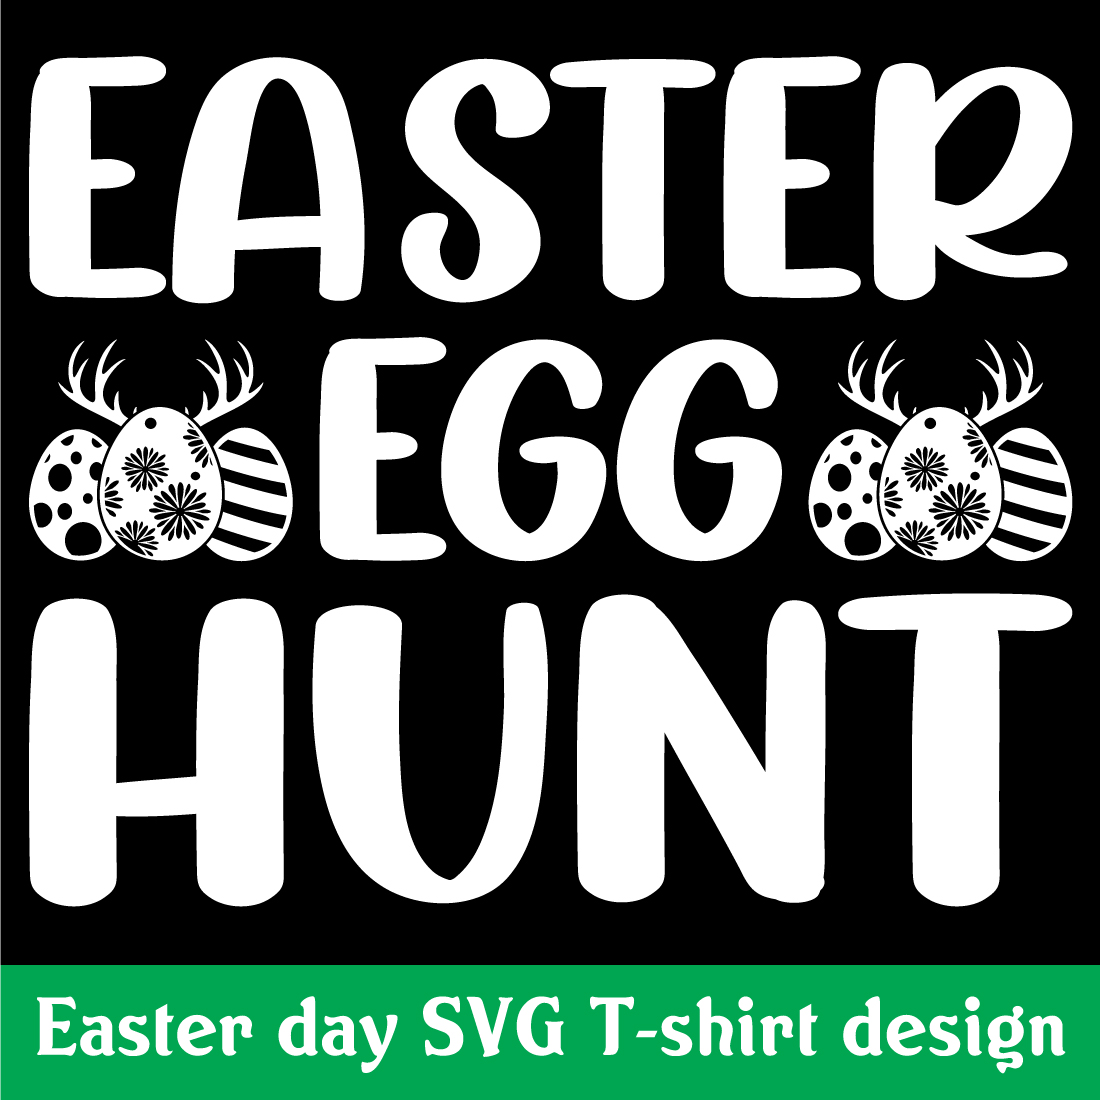 Easter egg hunt SVG T-shirt design preview image.